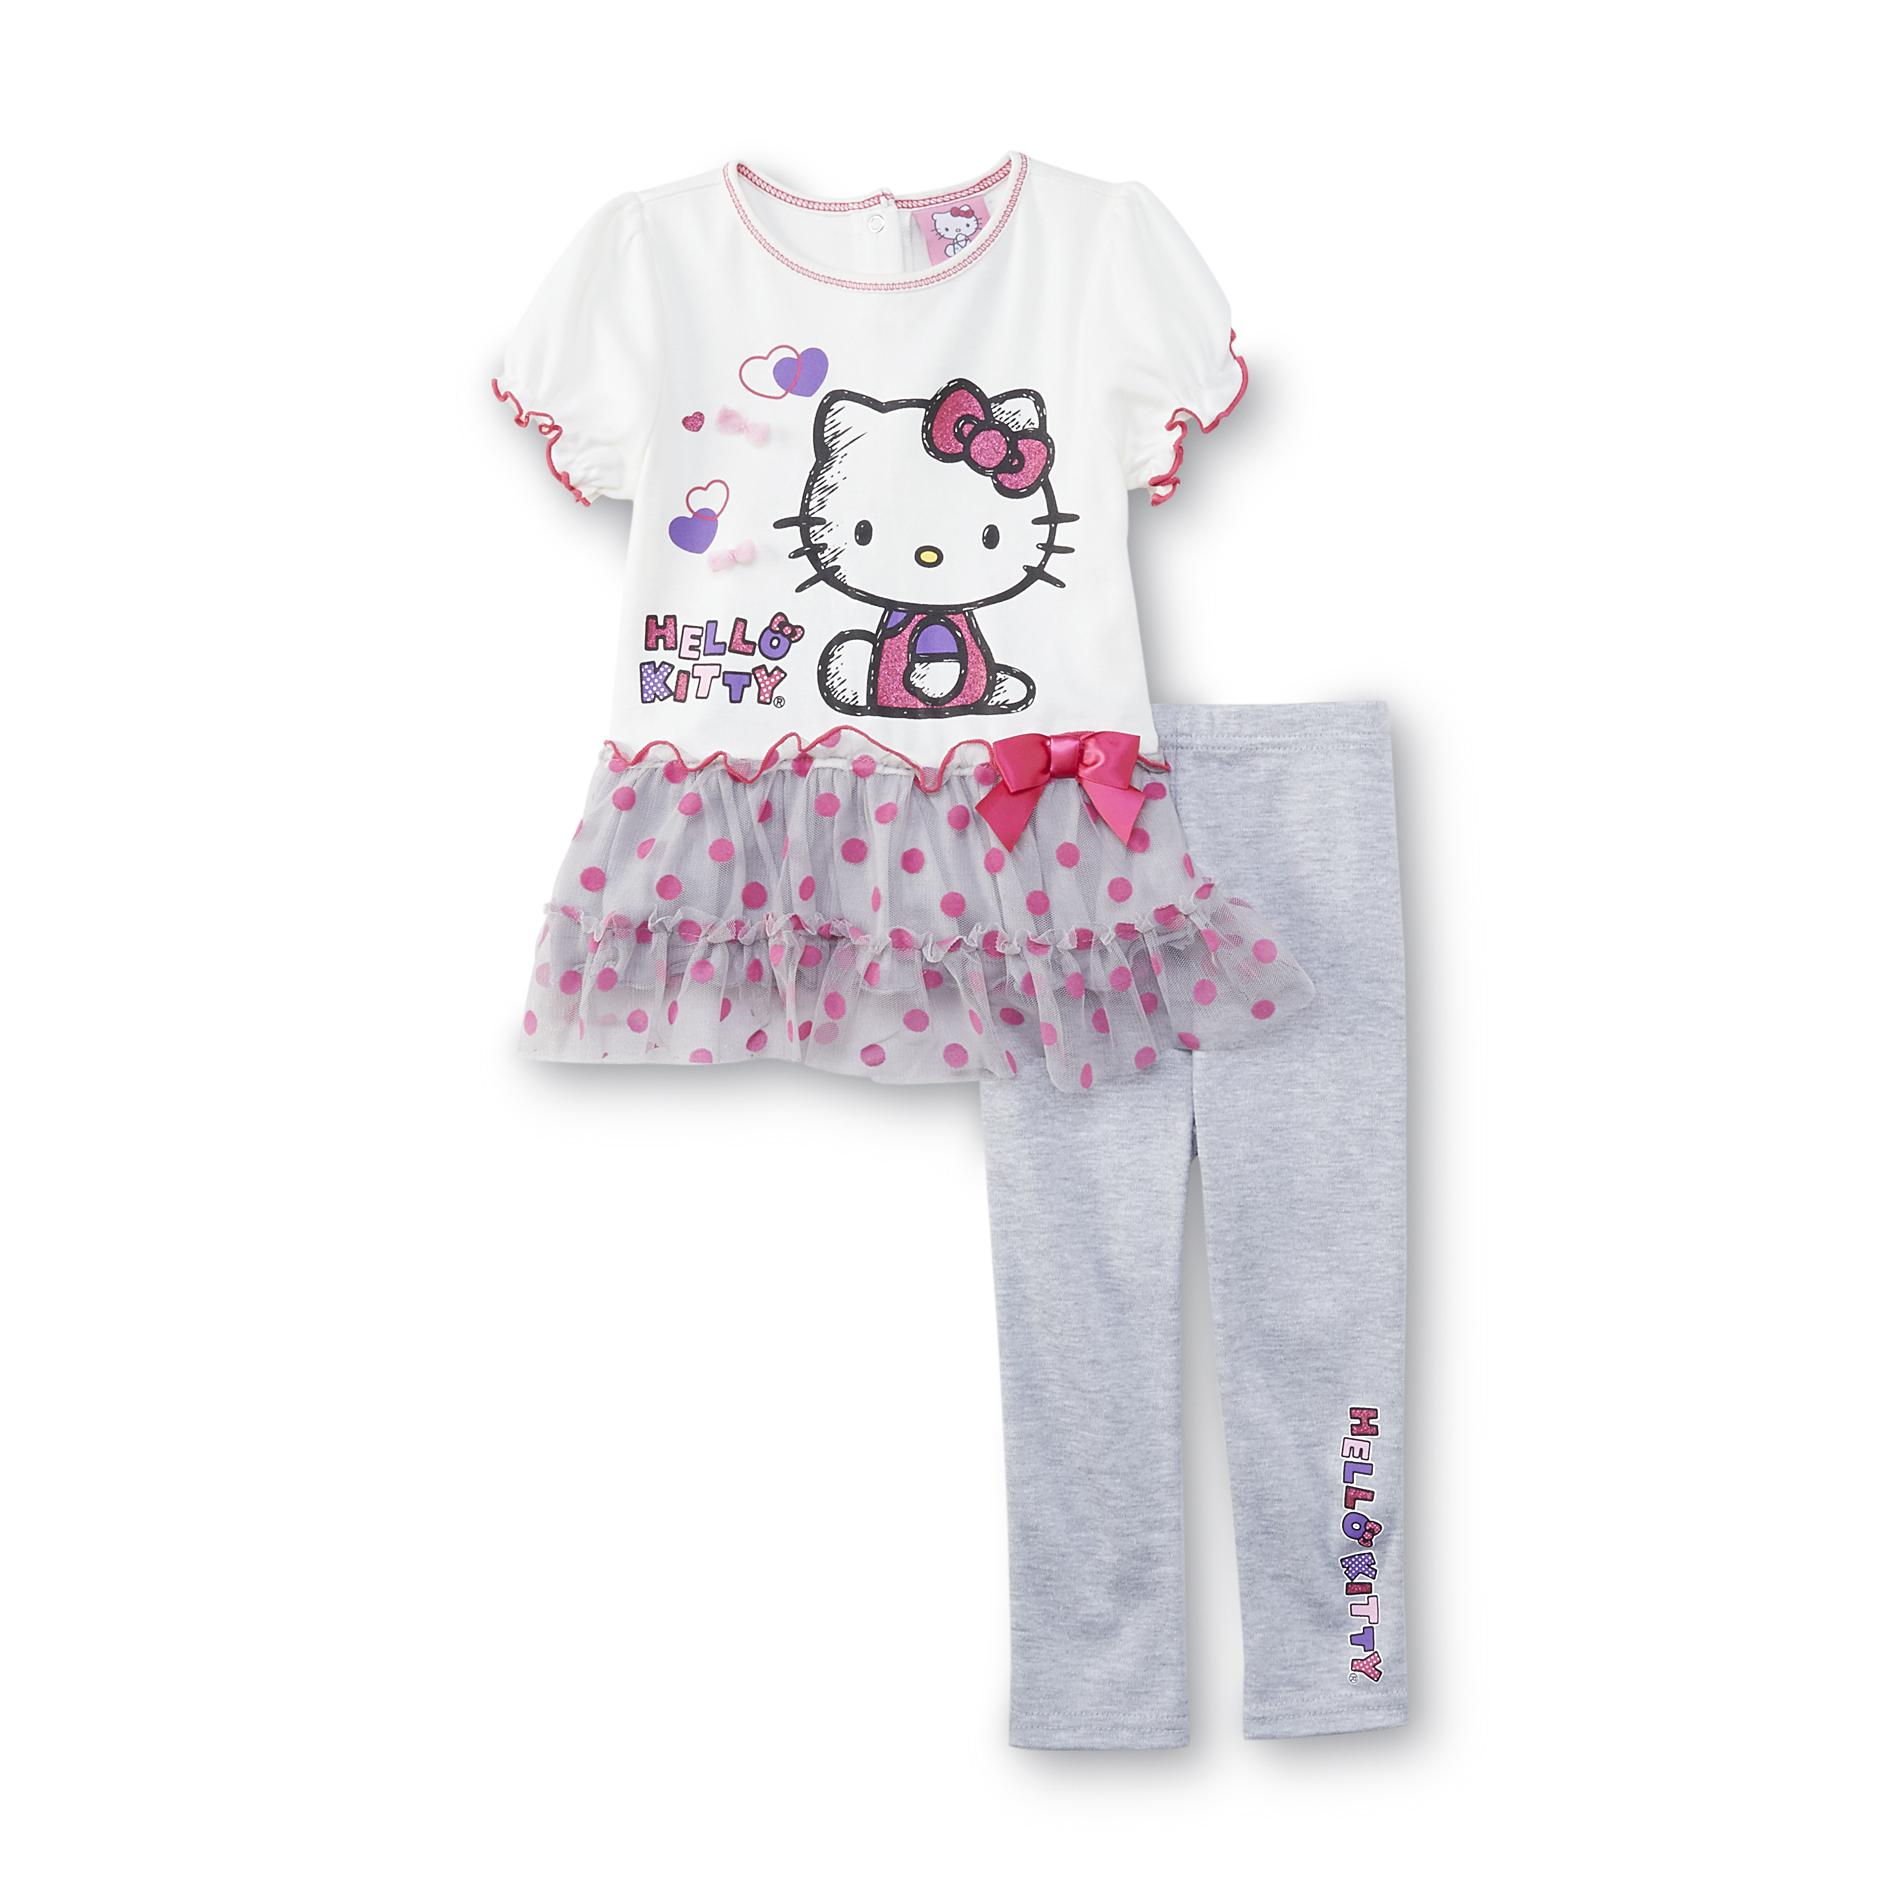 Hello Kitty Infant & Toddler Girl's Tunic Top & Leggings - Polka Dot